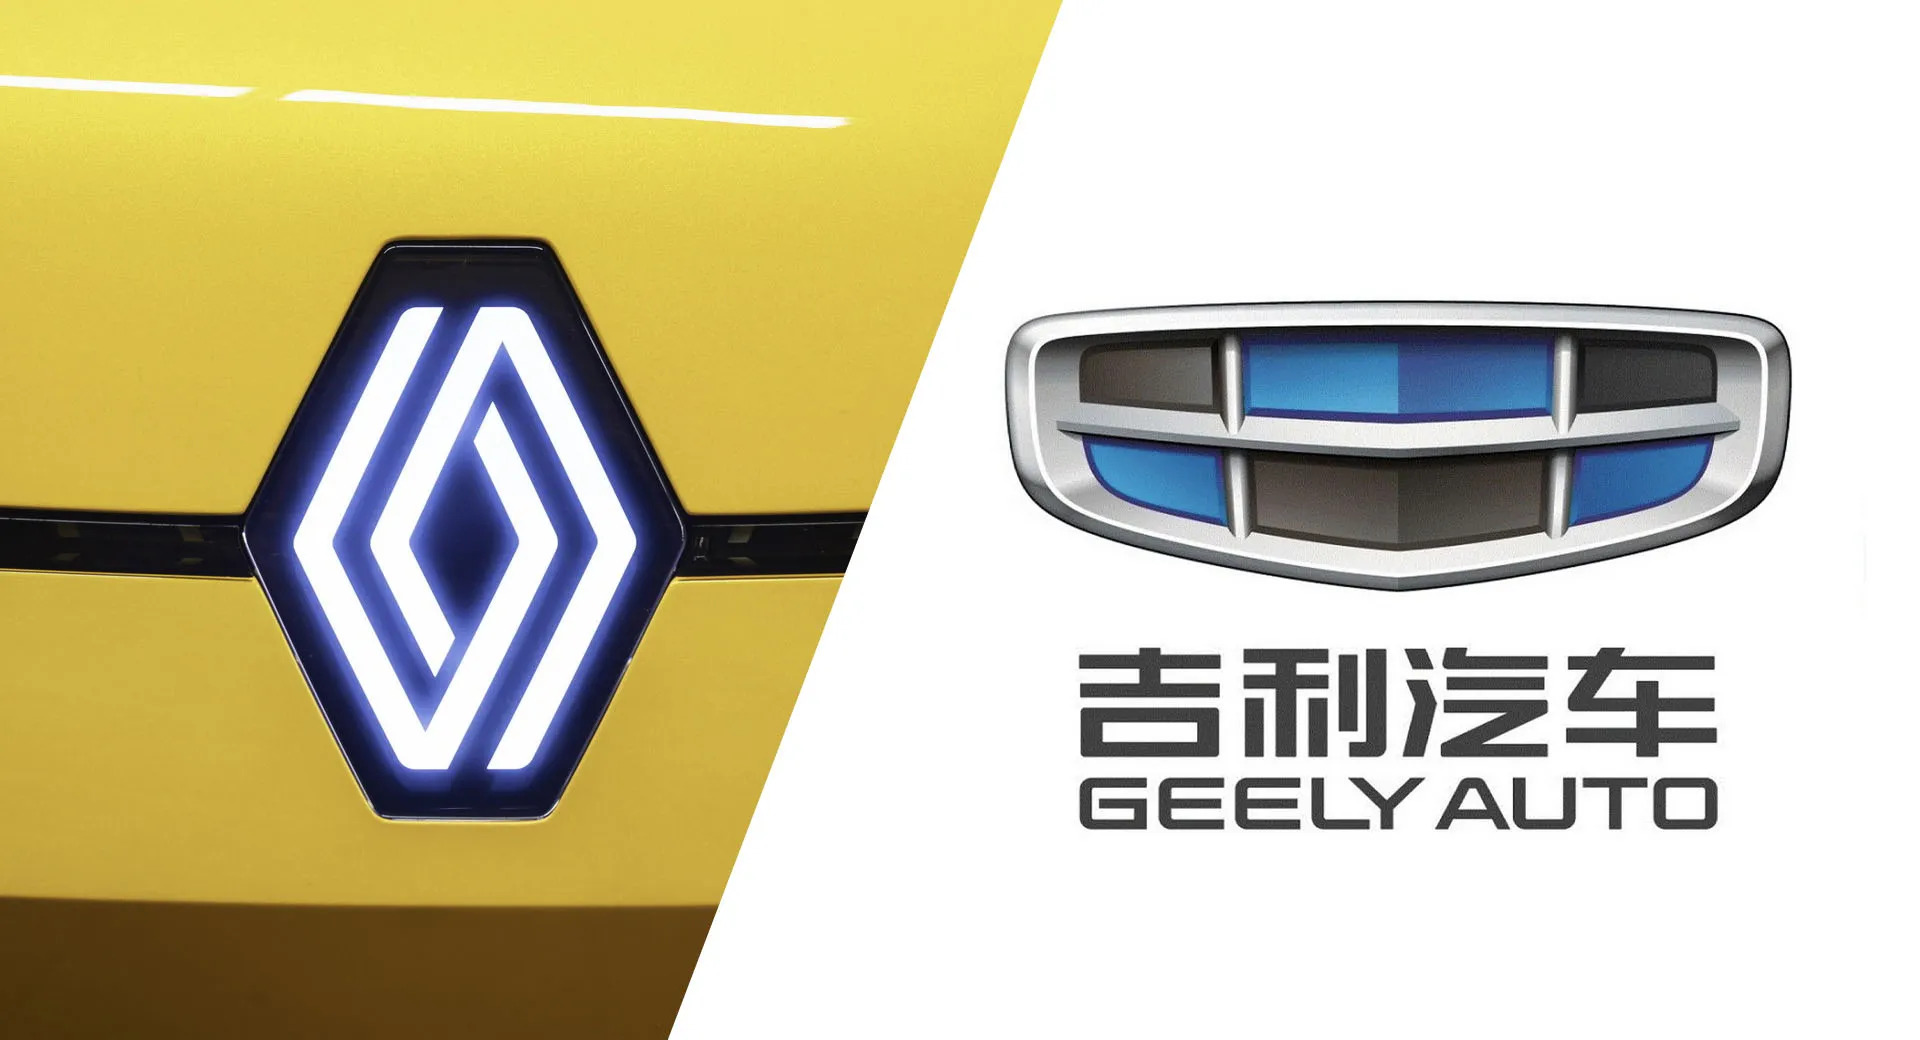 Geely และ Renault กำลังประกาศความร่วมมือ พร้อมรุกตลาดเกาหลีใต้ และ สหรัฐฯ